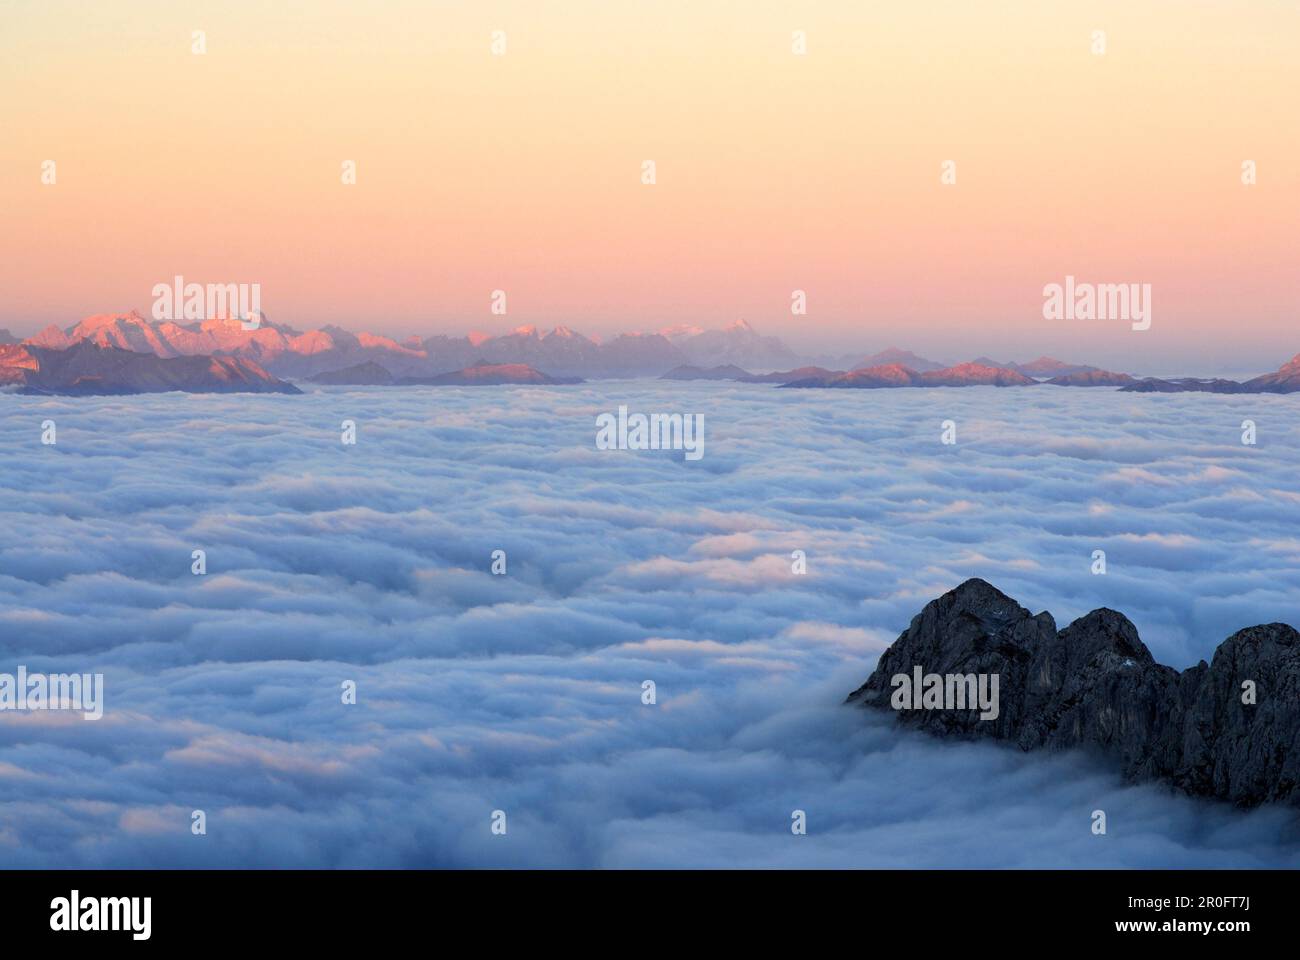 Mountain Scheffauer above fog bank, Karwendel and Wetterstein range in background, Ellmauer Halt, Kaiser range, Tyrol, Austria Stock Photo